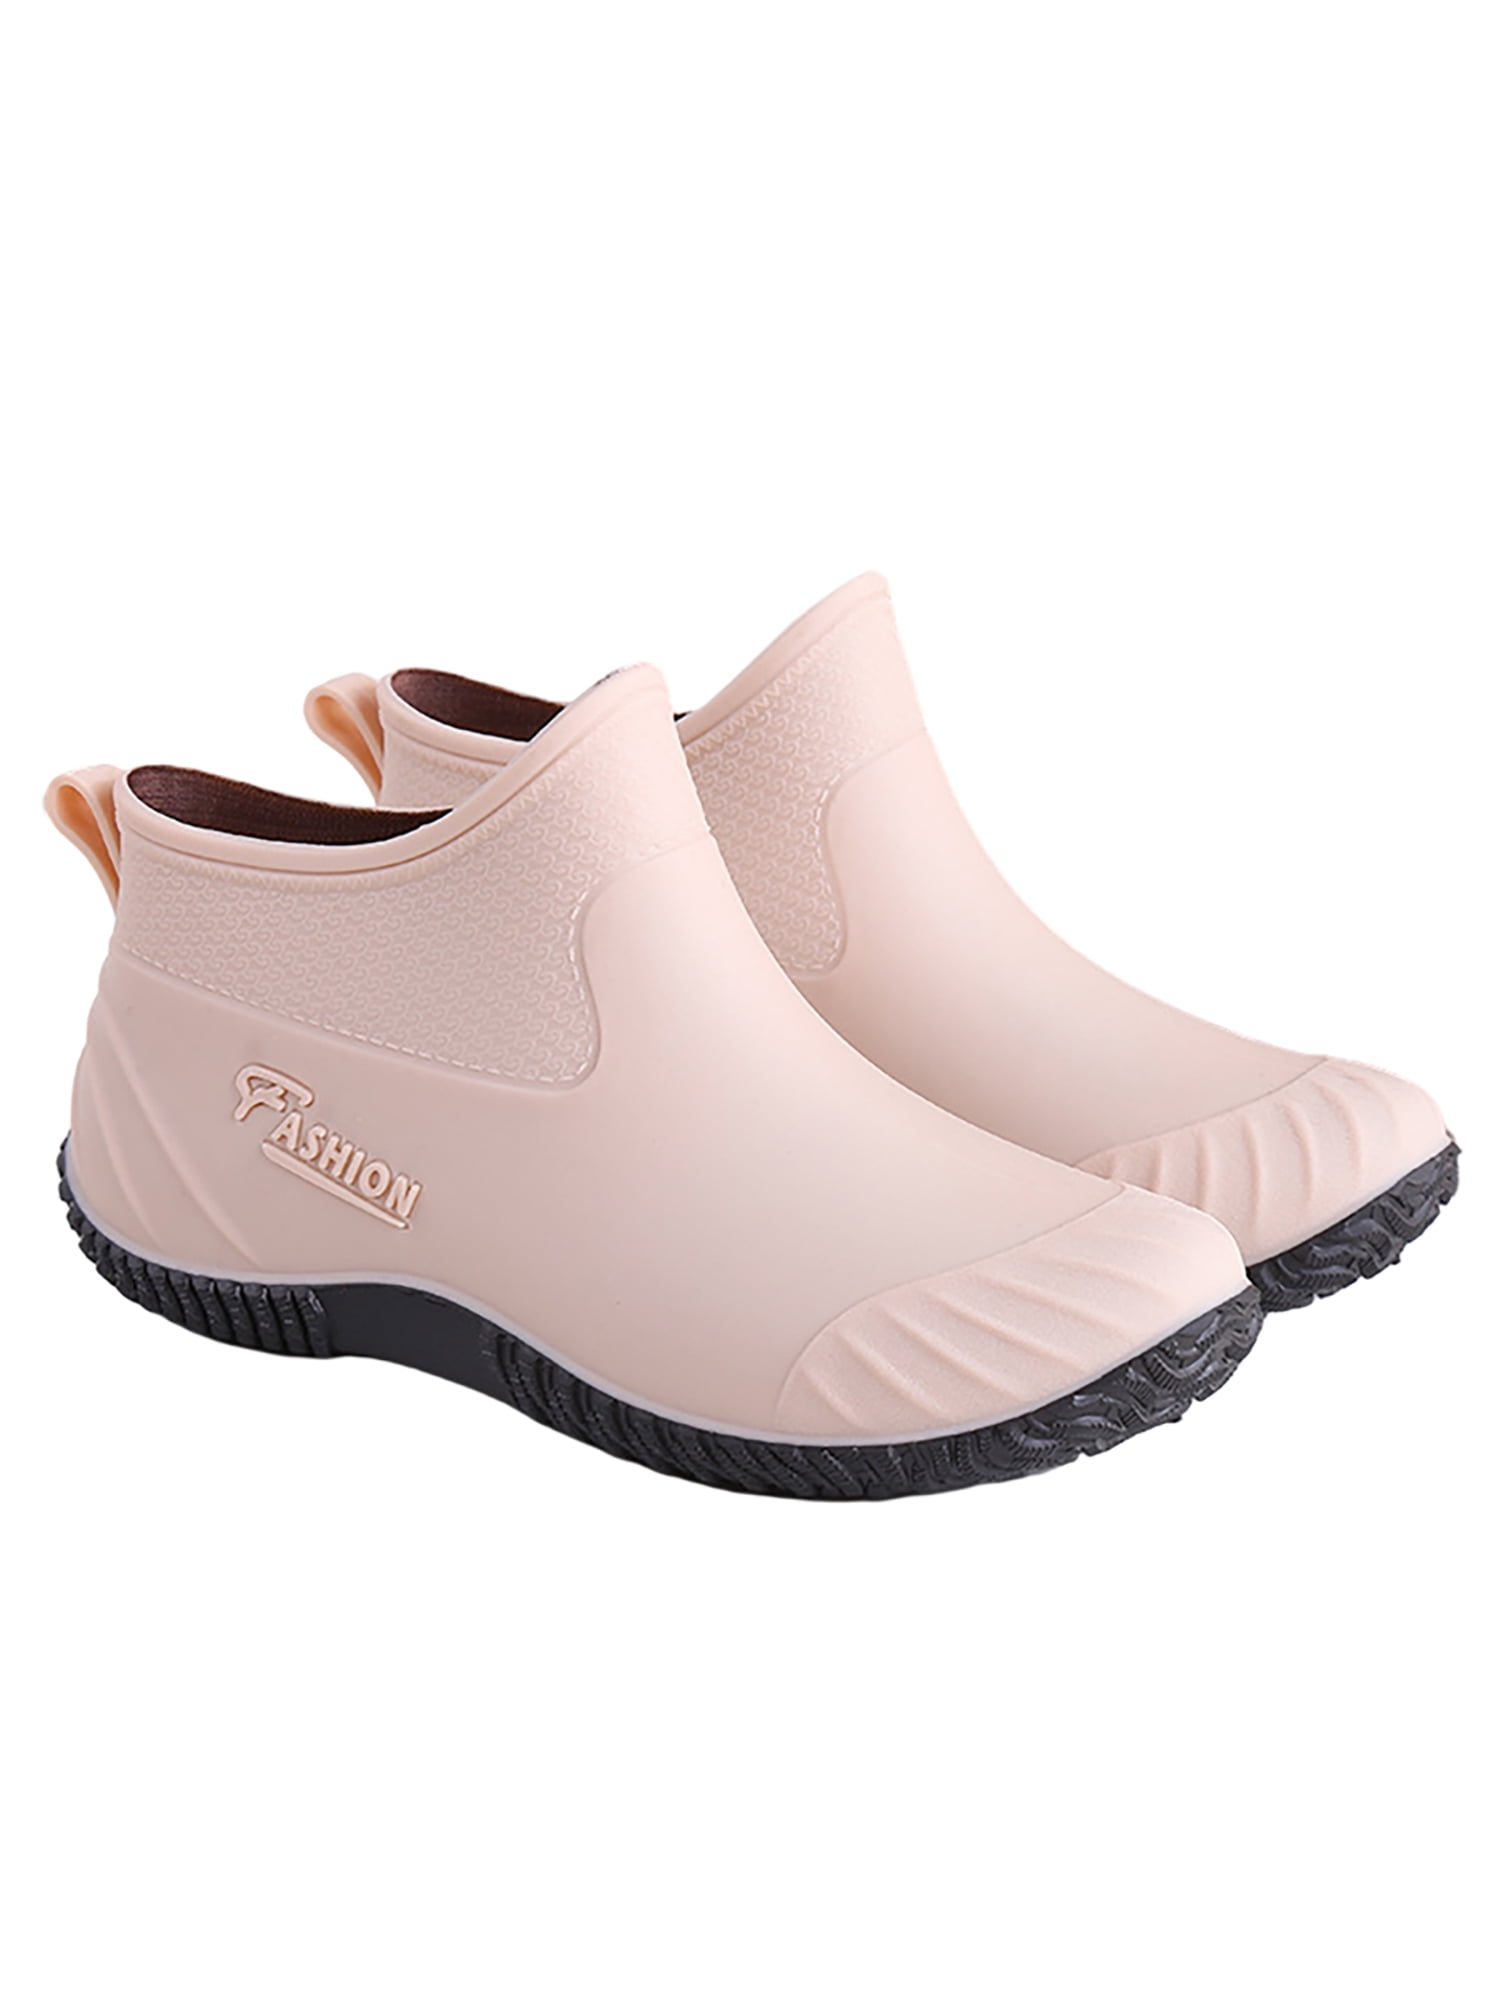 Woobling Rain Boots for Women Waterproof Rubber Garden Anti-Slip Ankle ...